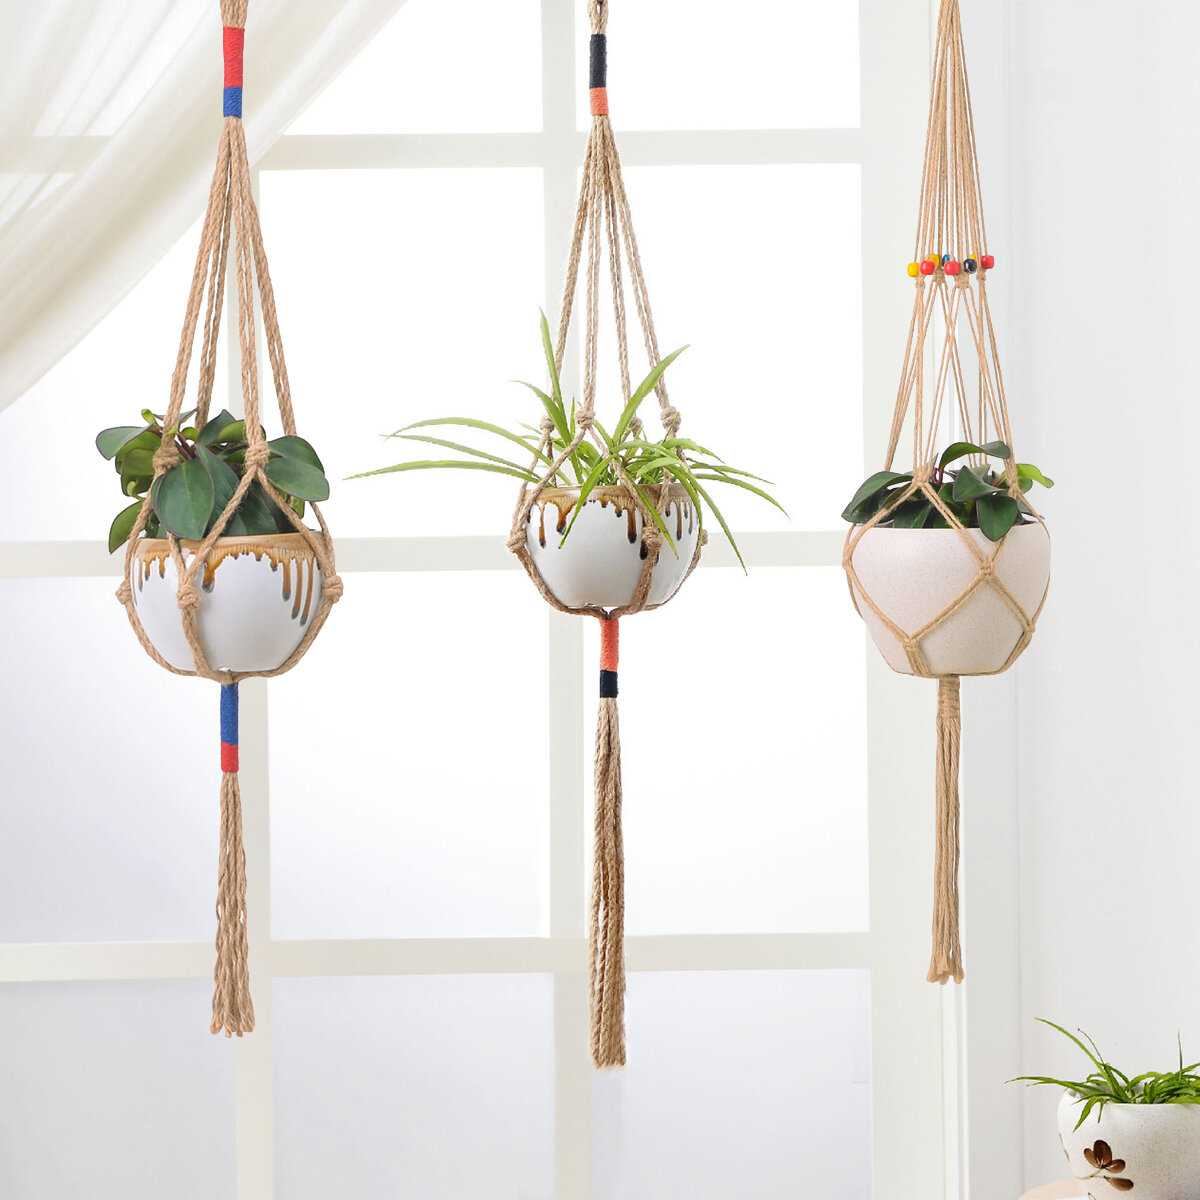 Details about   Handmade Pot Plant Tray Macrame Garden Holder Hanger Wood Bean Accessories Decor 